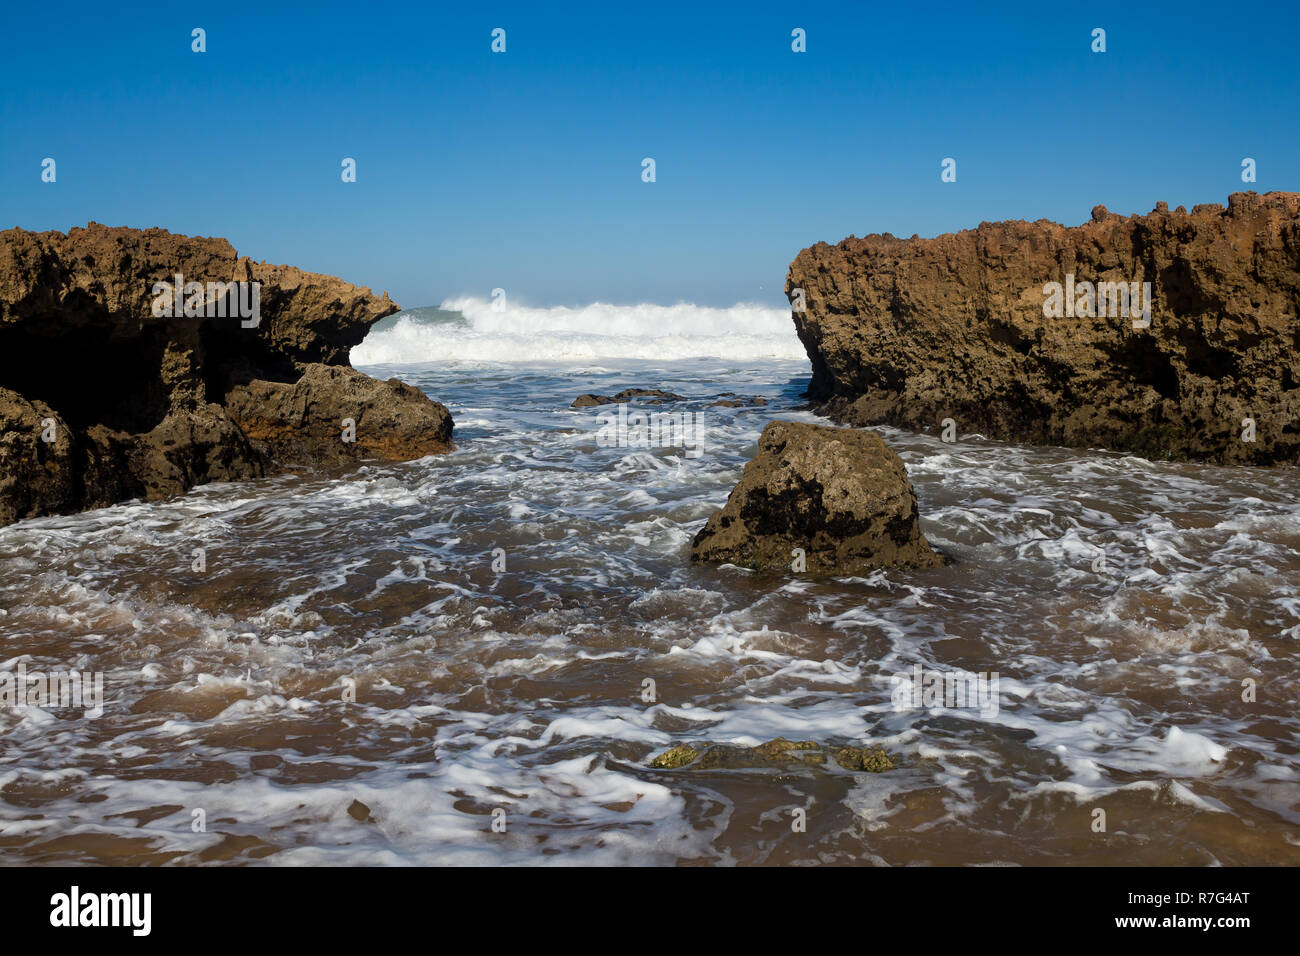 Plage avec peu de rochers sur la côte. L'eau sauvage de l'océan Atlantique avec des vagues. Ciel bleu clair. Horizon dans l'arrière-plan. Plage Beddouza, Maroc. Banque D'Images